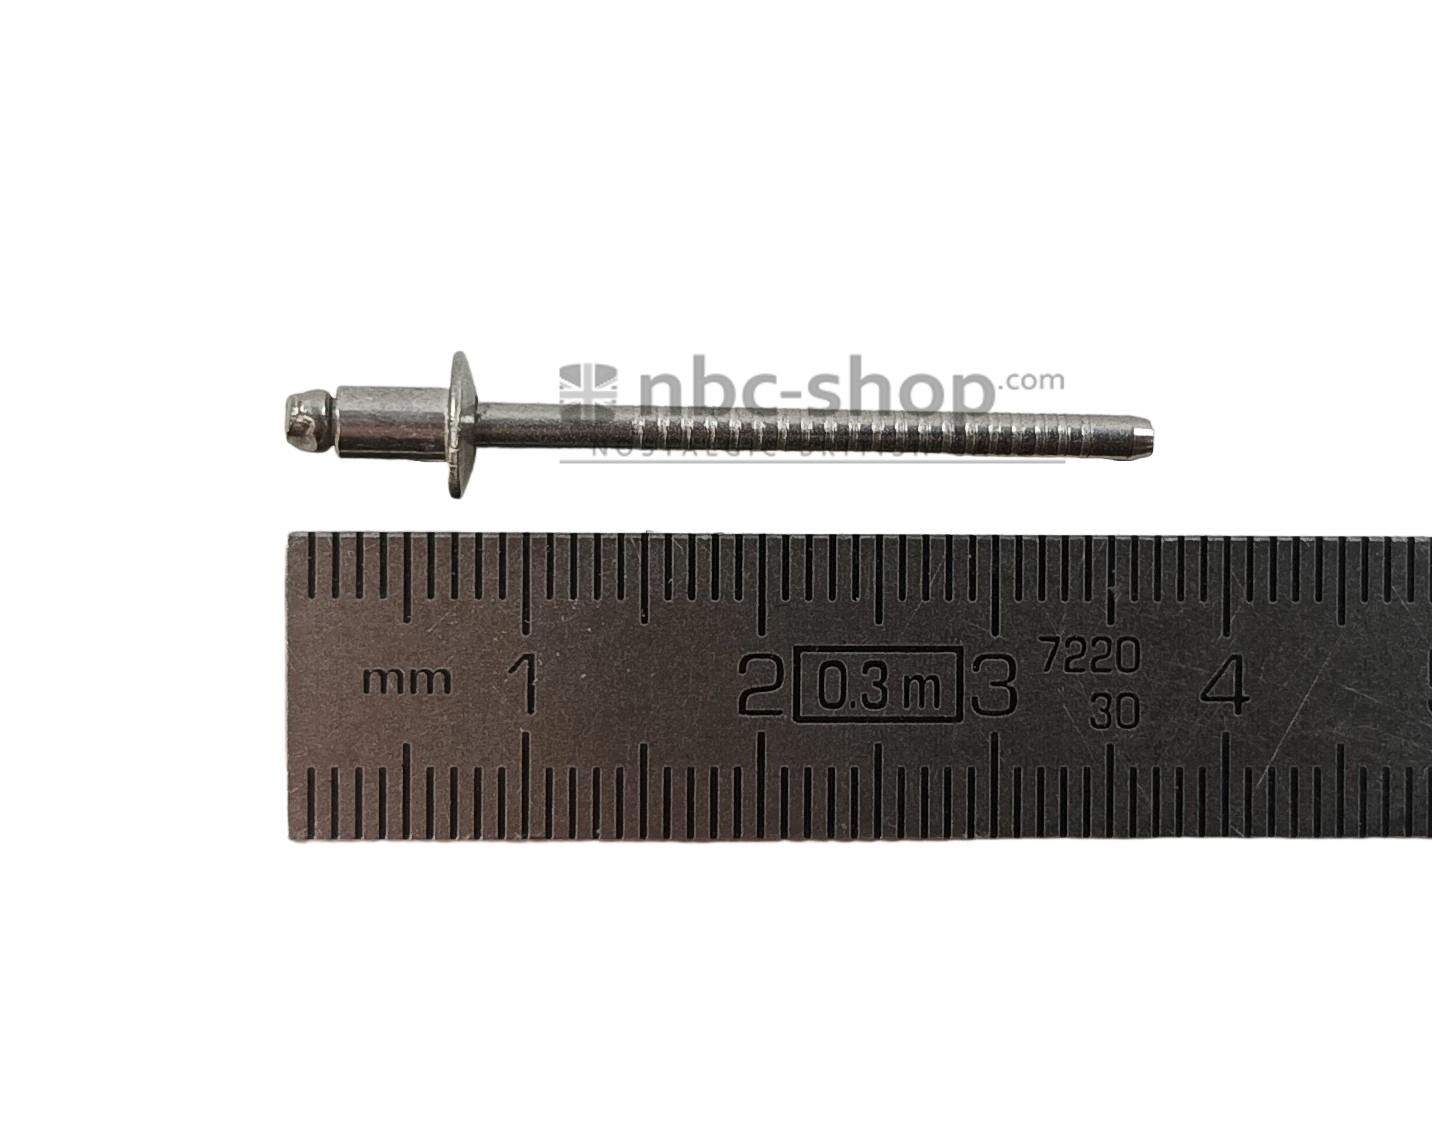 DMP819 RIVET POP 3.1 x 06mm nbc-shop 1